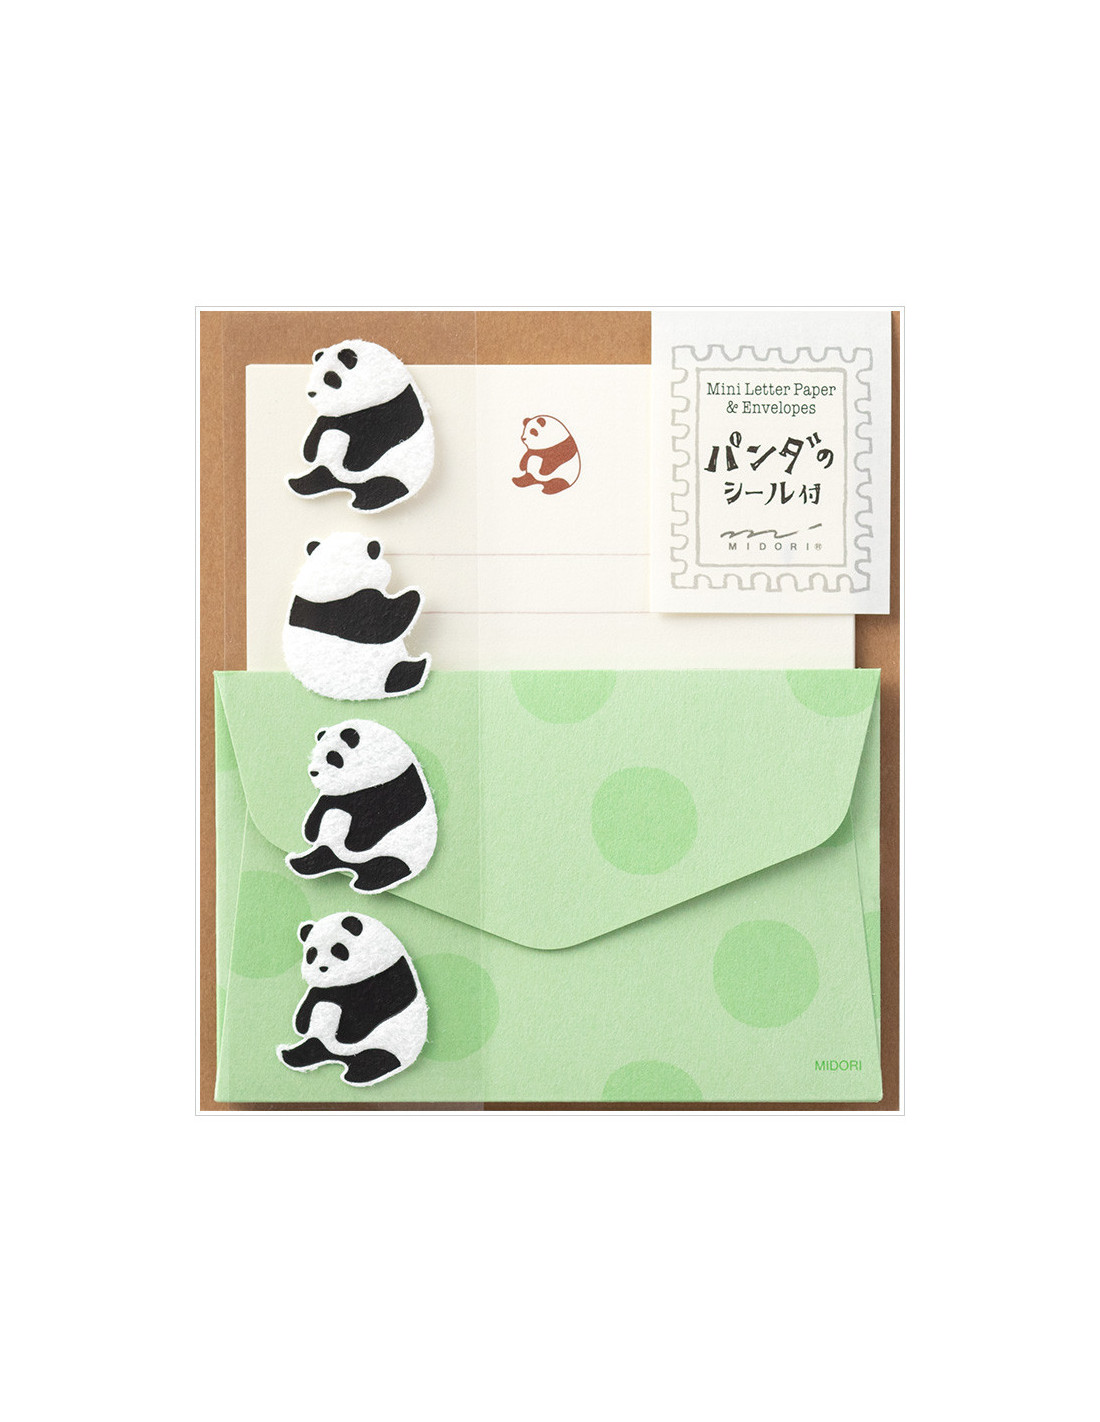 Lot de mini papier à lettre + enveloppes + stickers - Panda - Midori